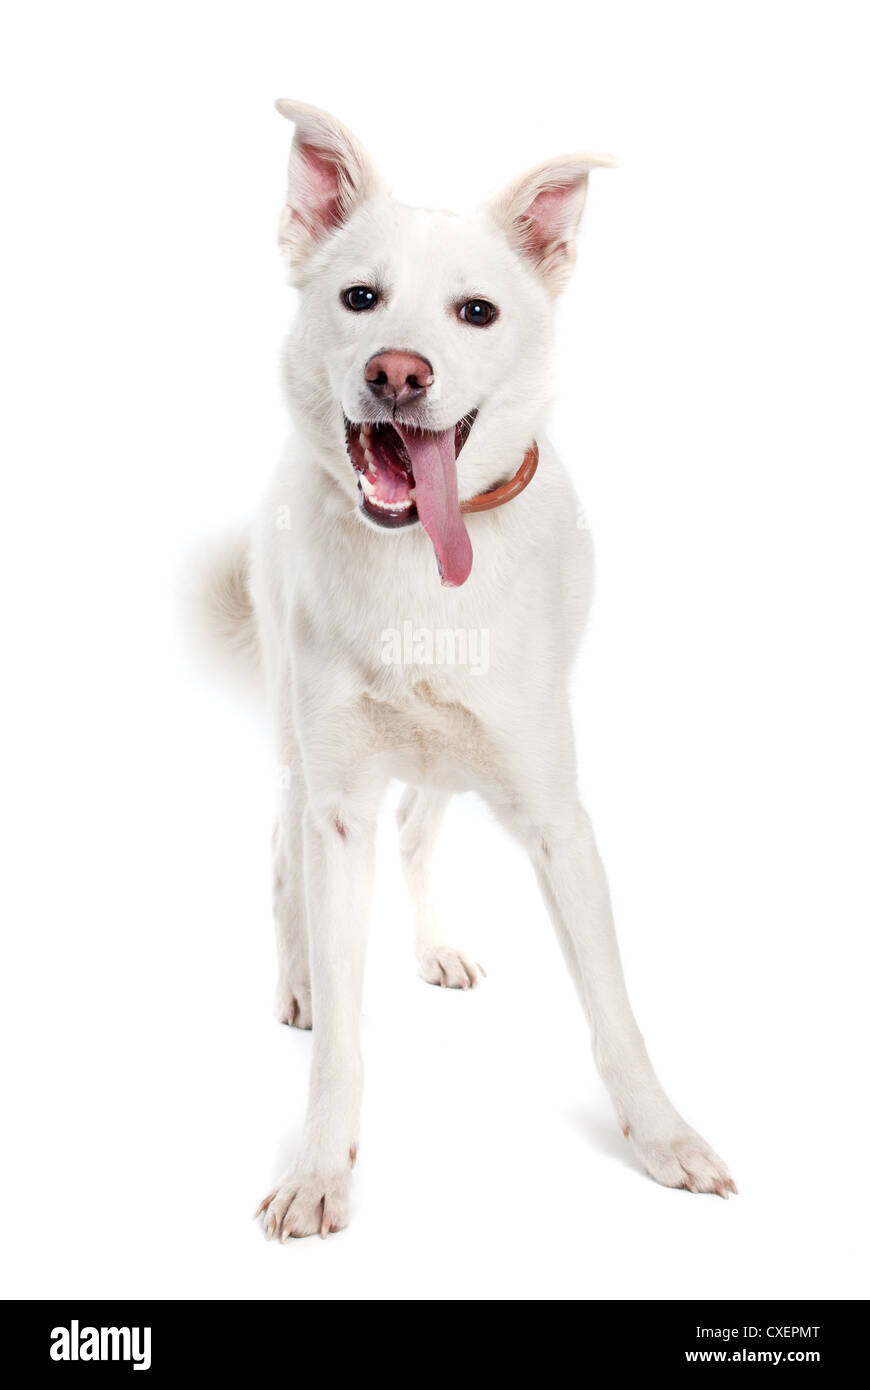 White dog on white background Stock Photo